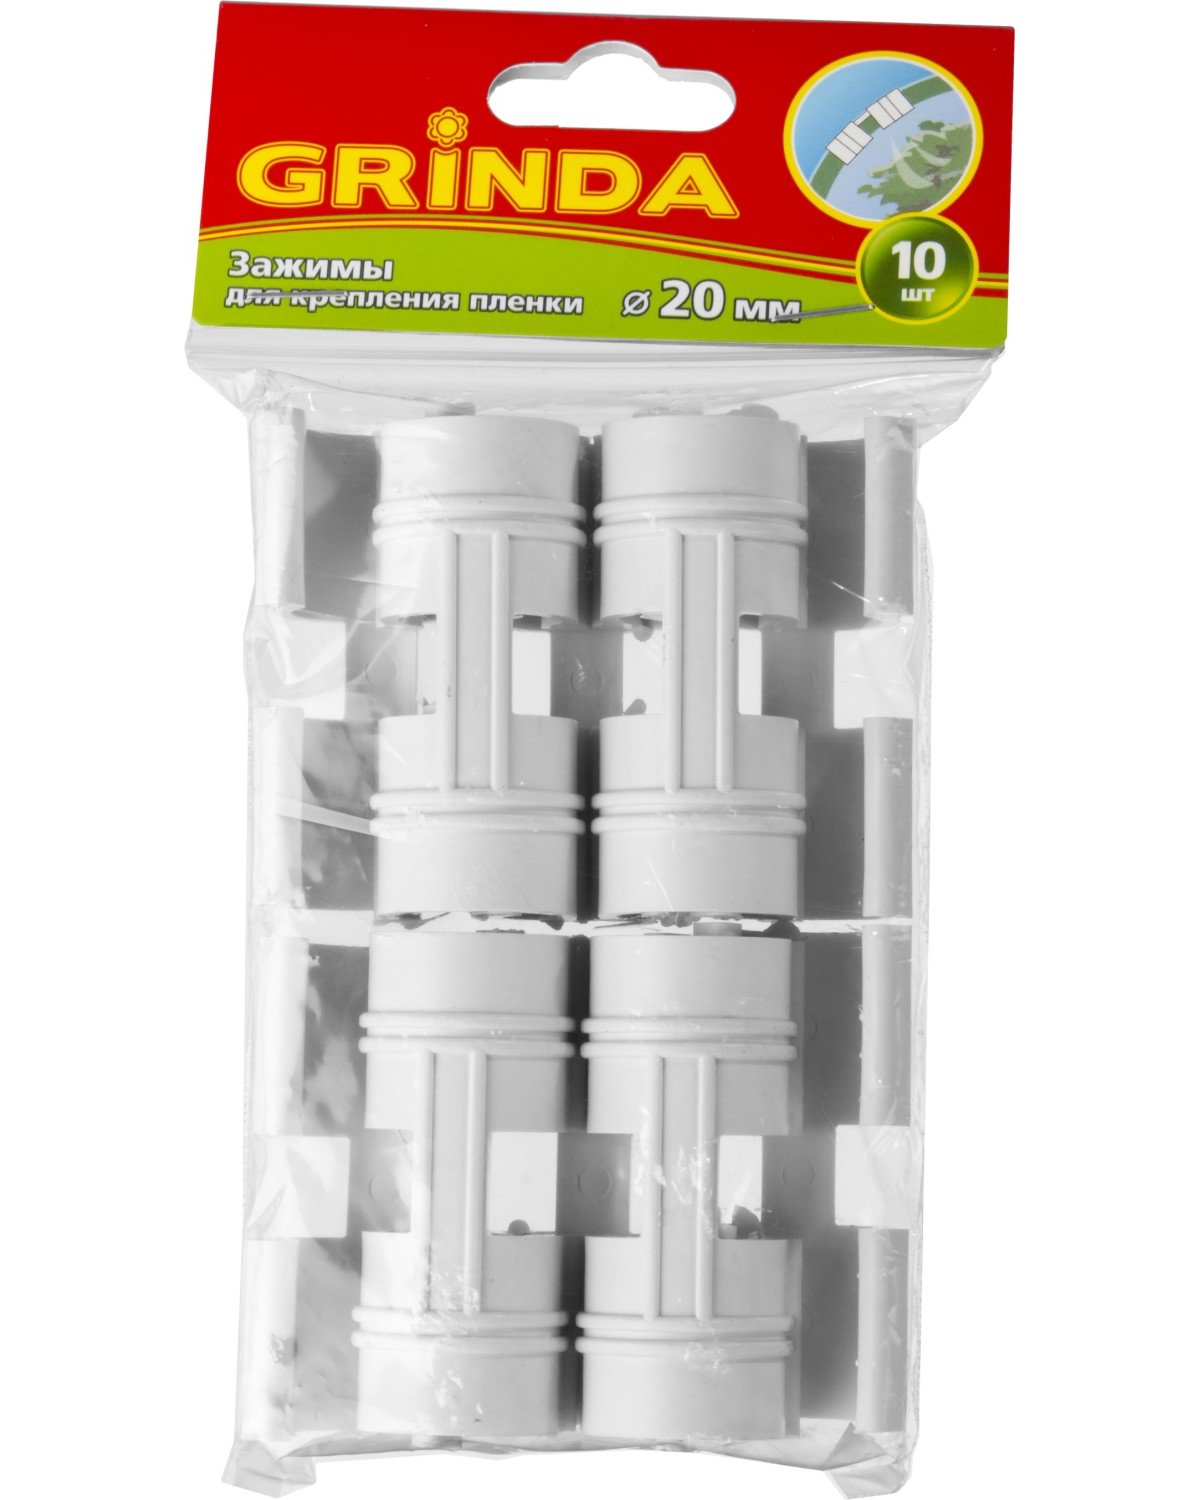 Зажим для крепления пленки GRINDA d20 мм, белый, 10 шт. (422317-20)